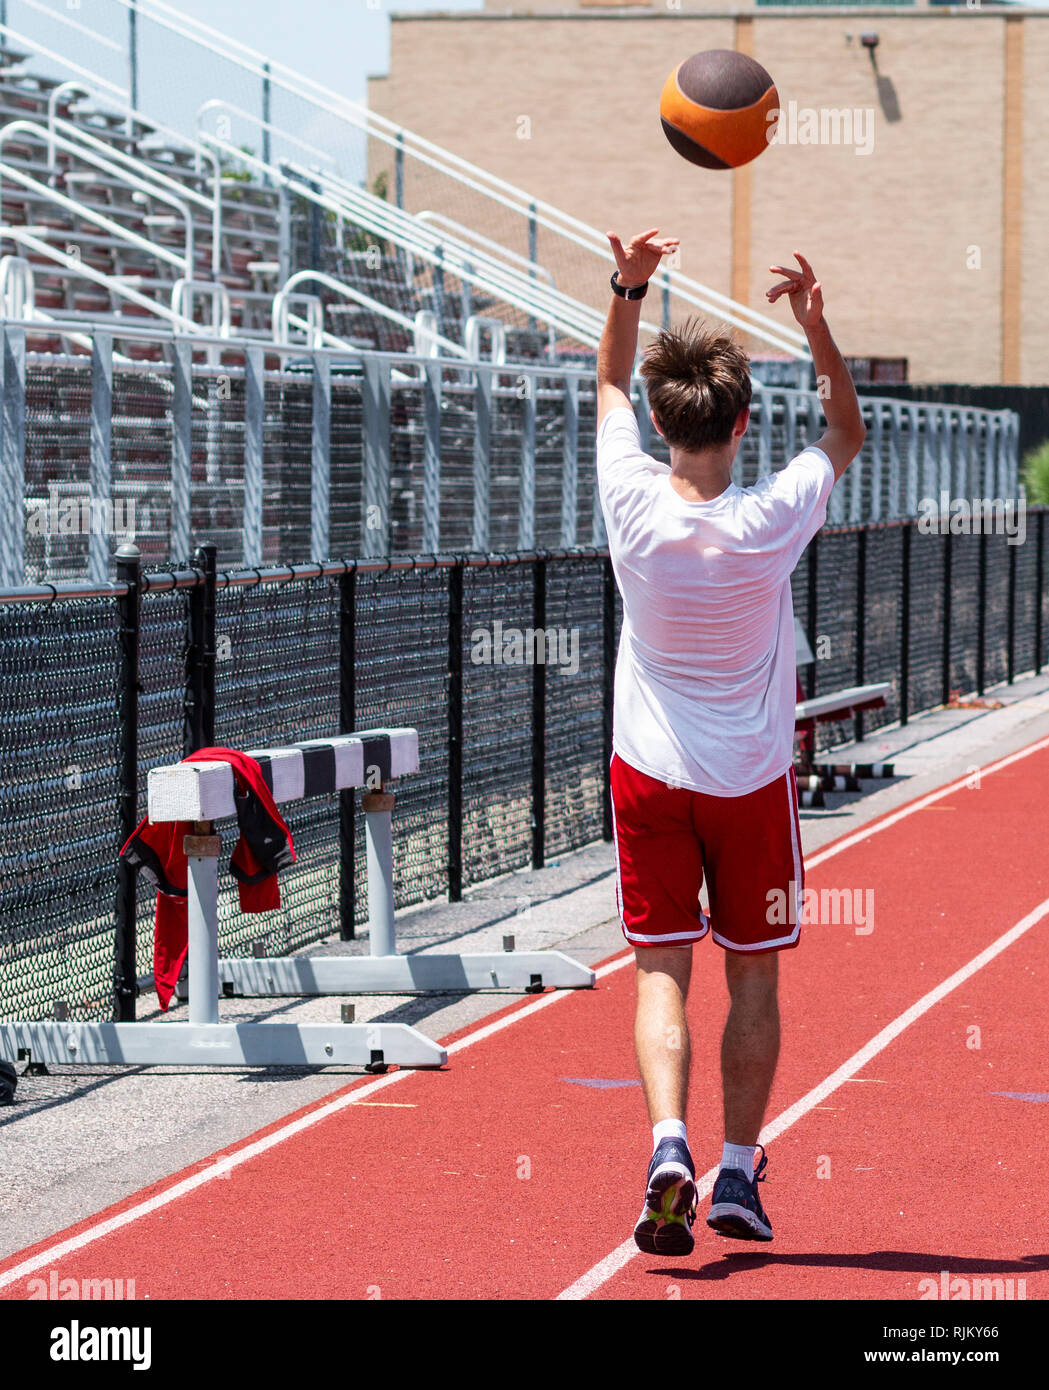 Ein High School Athlet ist auf einer roten Piste vor der Bleiche werfen einen Medizinball overhead rückwärts für Kraft, Schnelligkeit und Beweglichkeit zu üben. Stockfoto